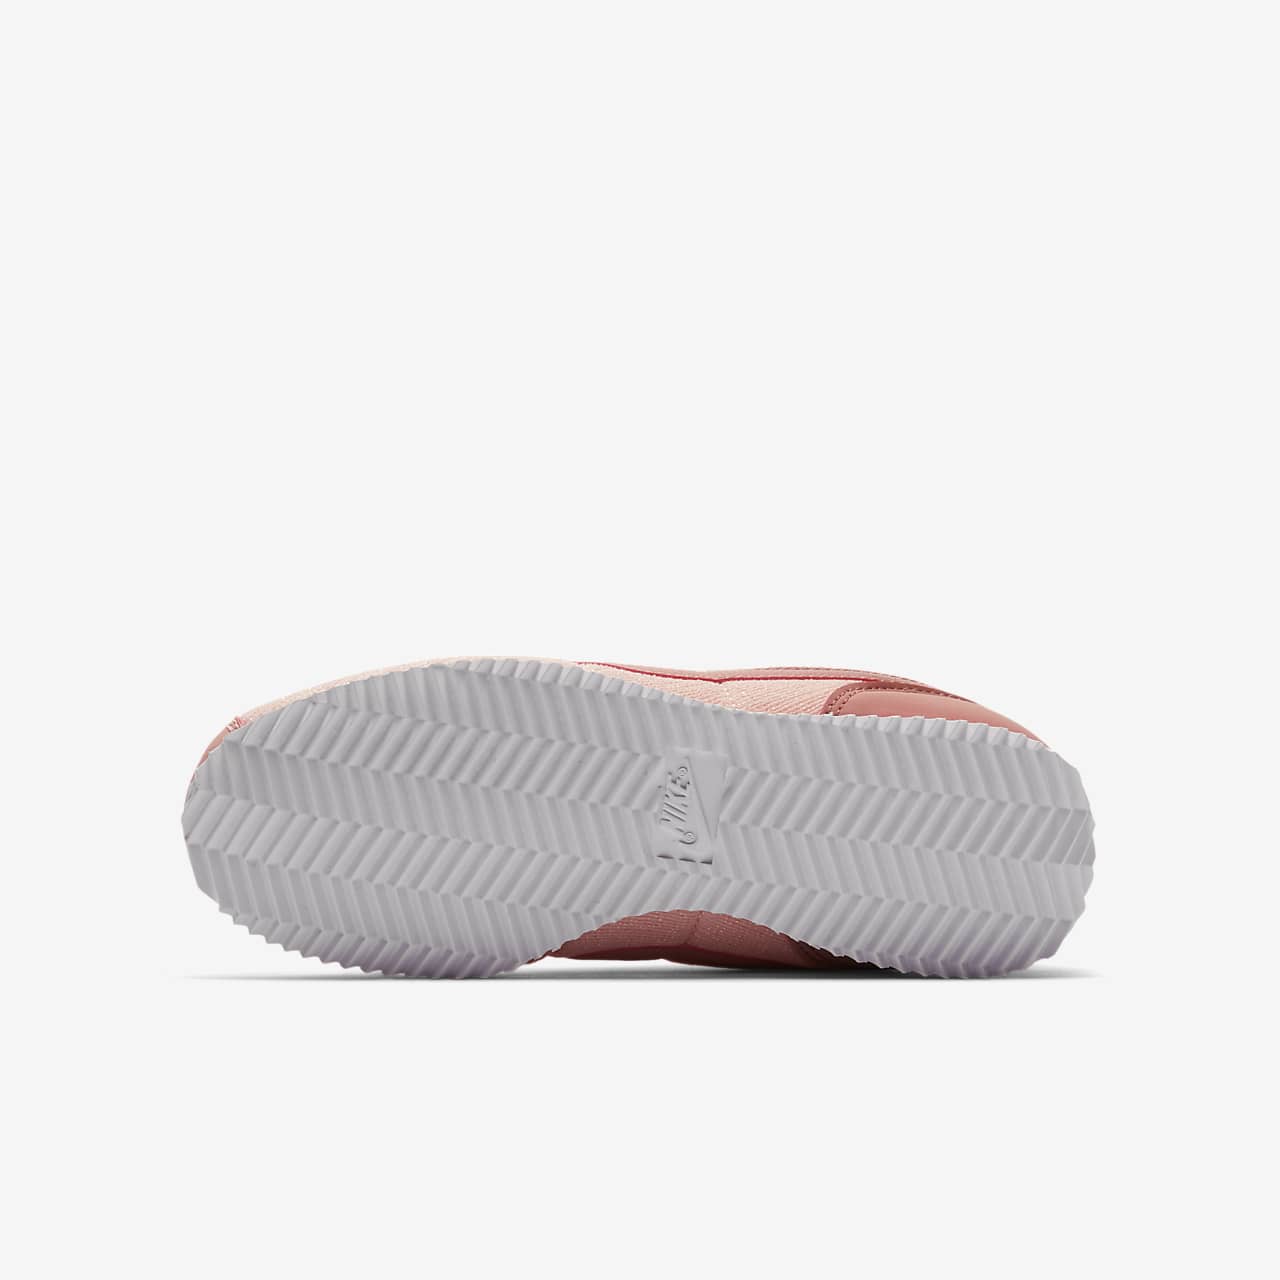 Nike Cortez Basic TXT SE 'Storm Pink' - AA3498-600